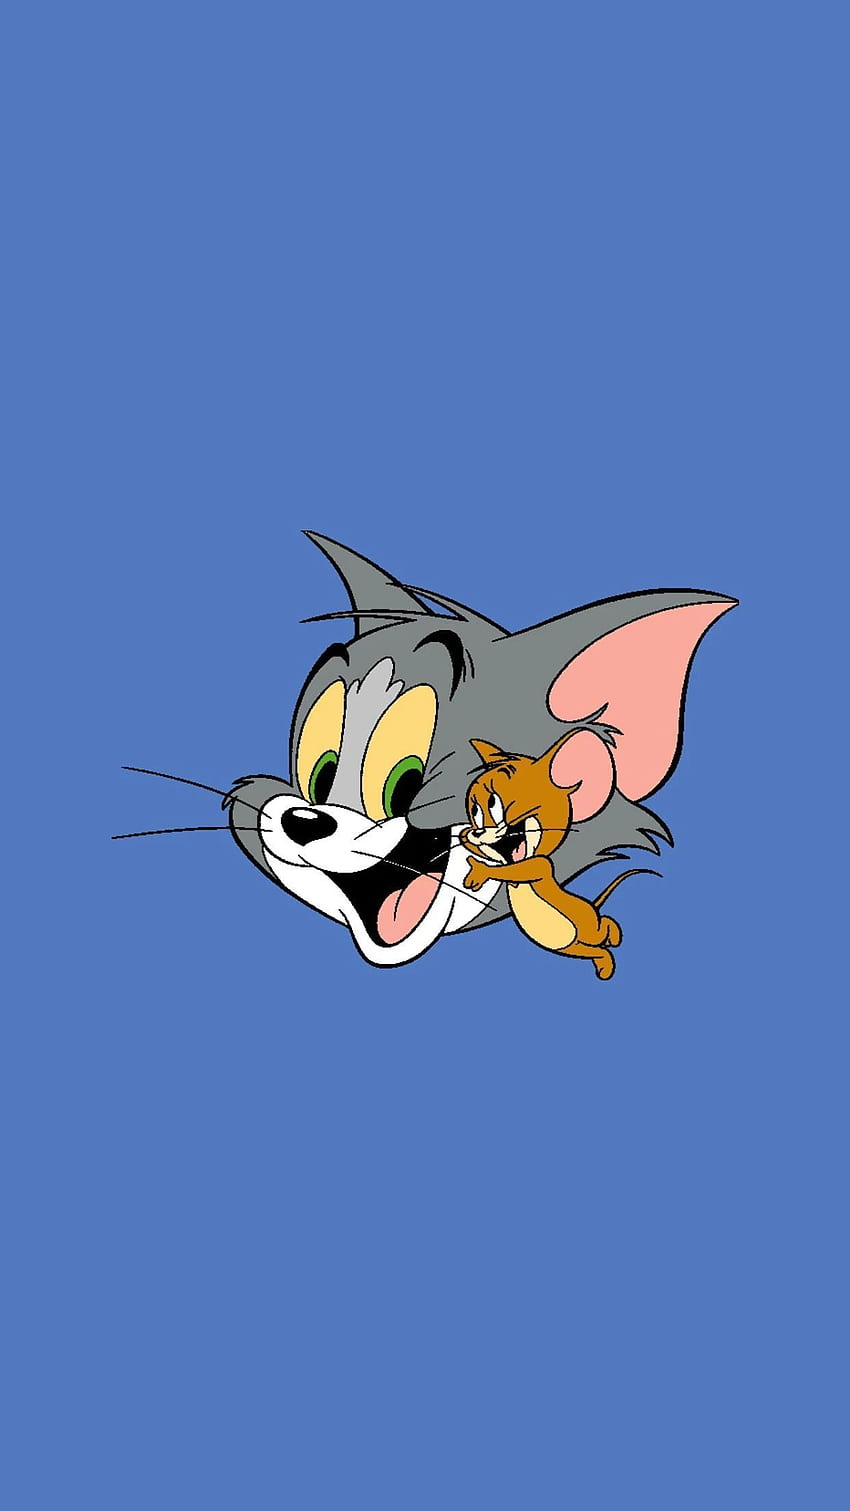 Teléfono para conmemorar al animador de Tom y Jerry, Gene Deitch. Tom y jerry, Tom y jerry, Tom y jerry, Lindo Tom y Jerry fondo de pantalla del teléfono